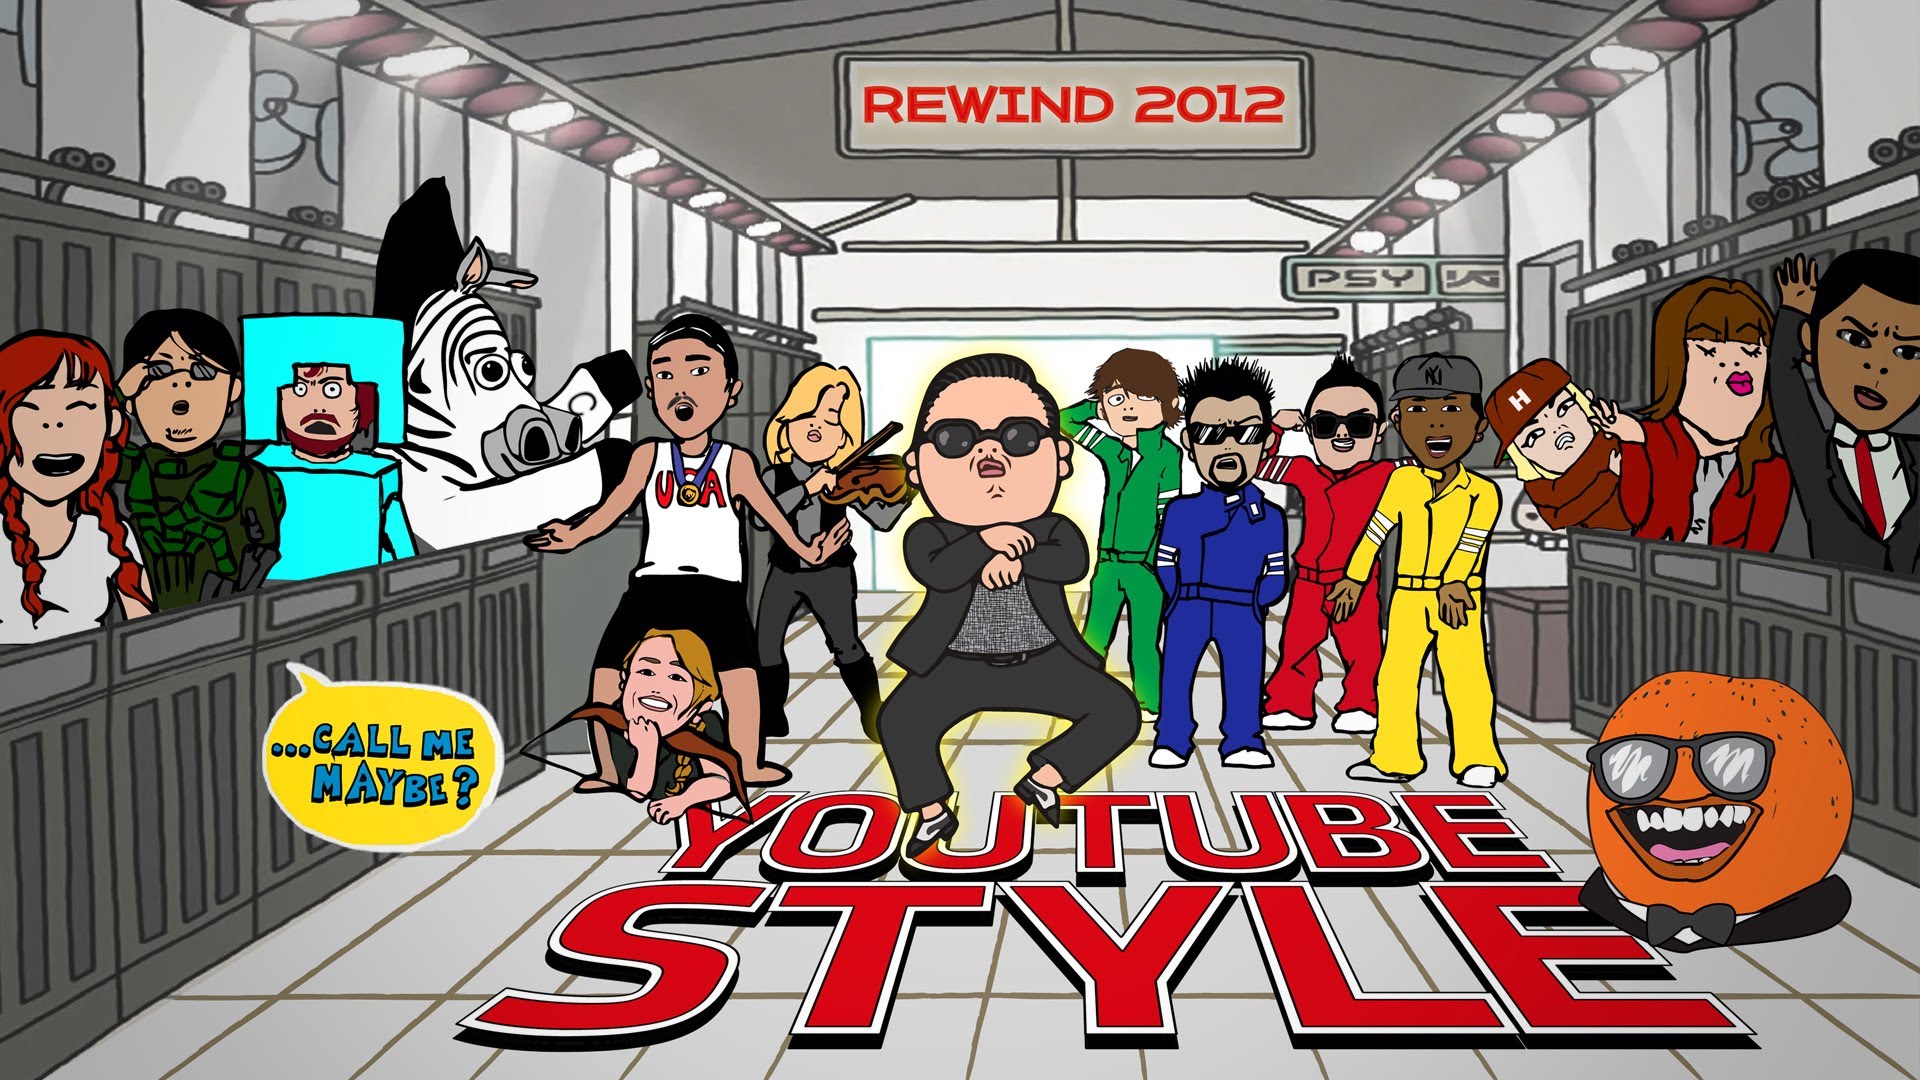 Retroceder estilo YouTube 2012